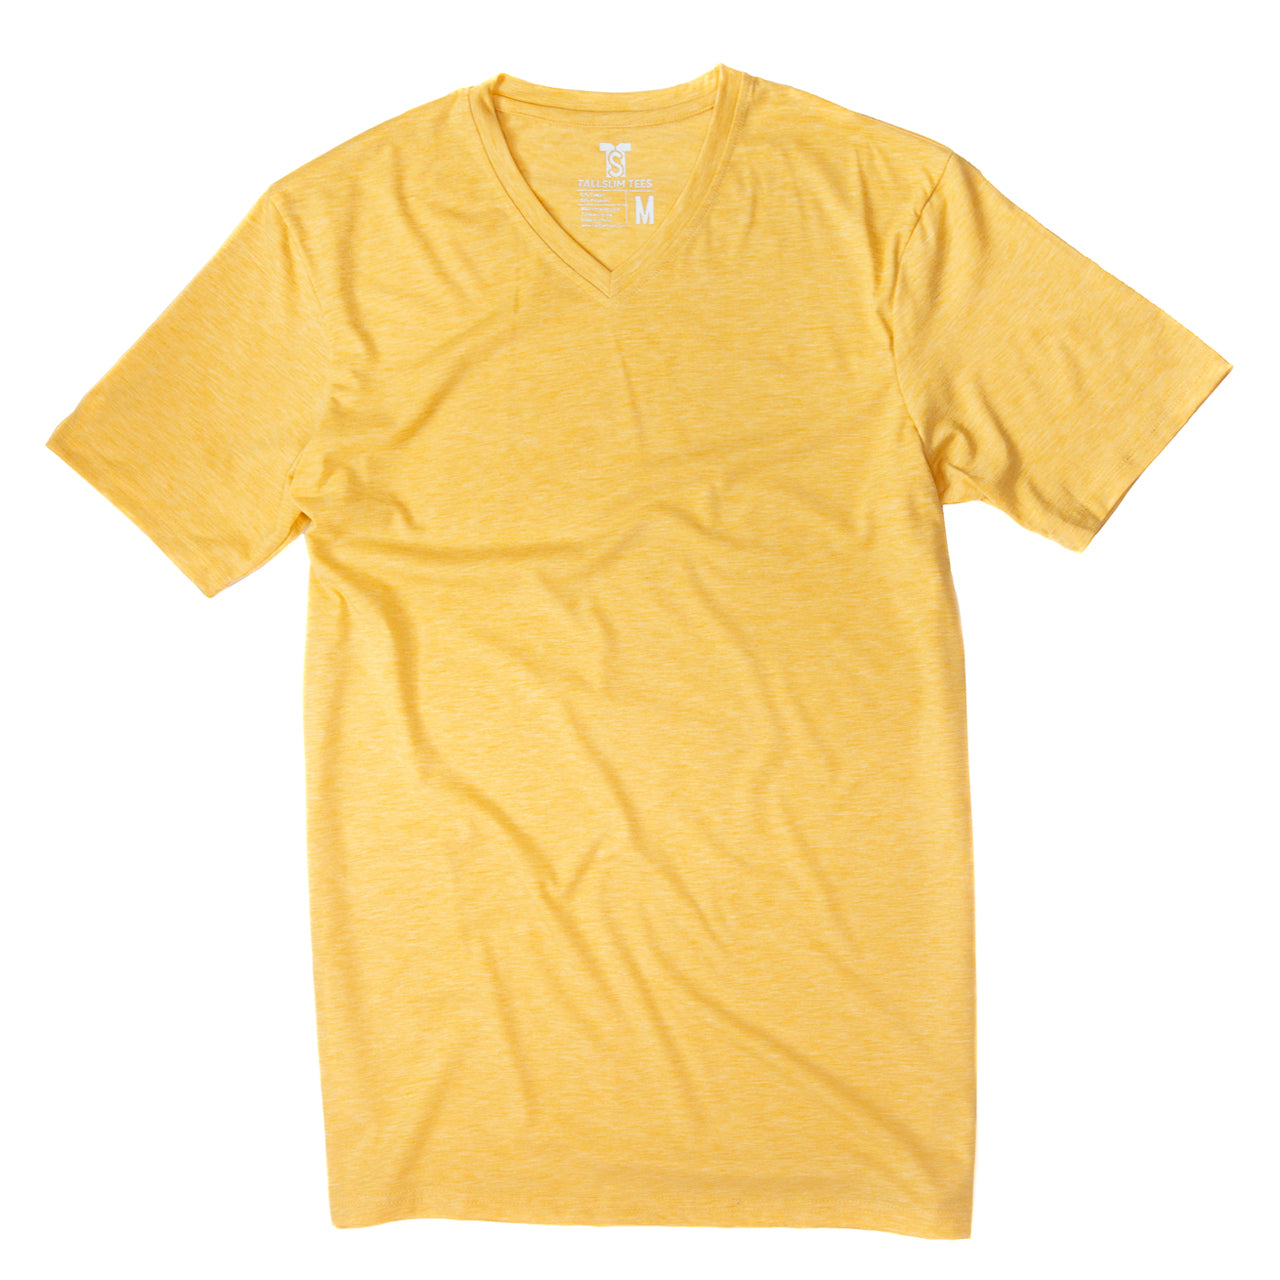 Yellow V-Neck Shirt for Tall Slim Men